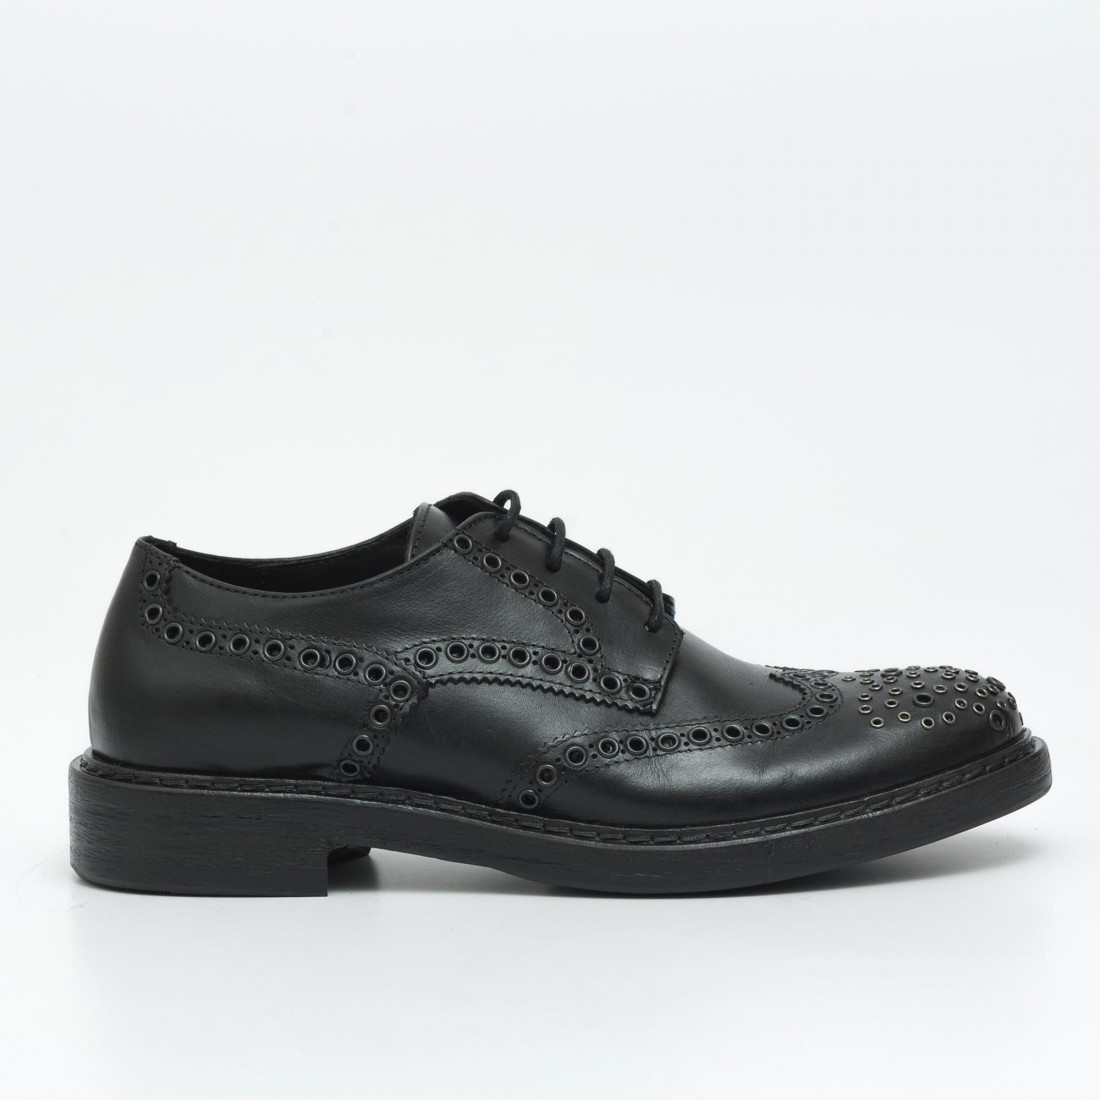 Schnüren Sie Derby-Schuhe aus schwarzem Leder mit Nieten